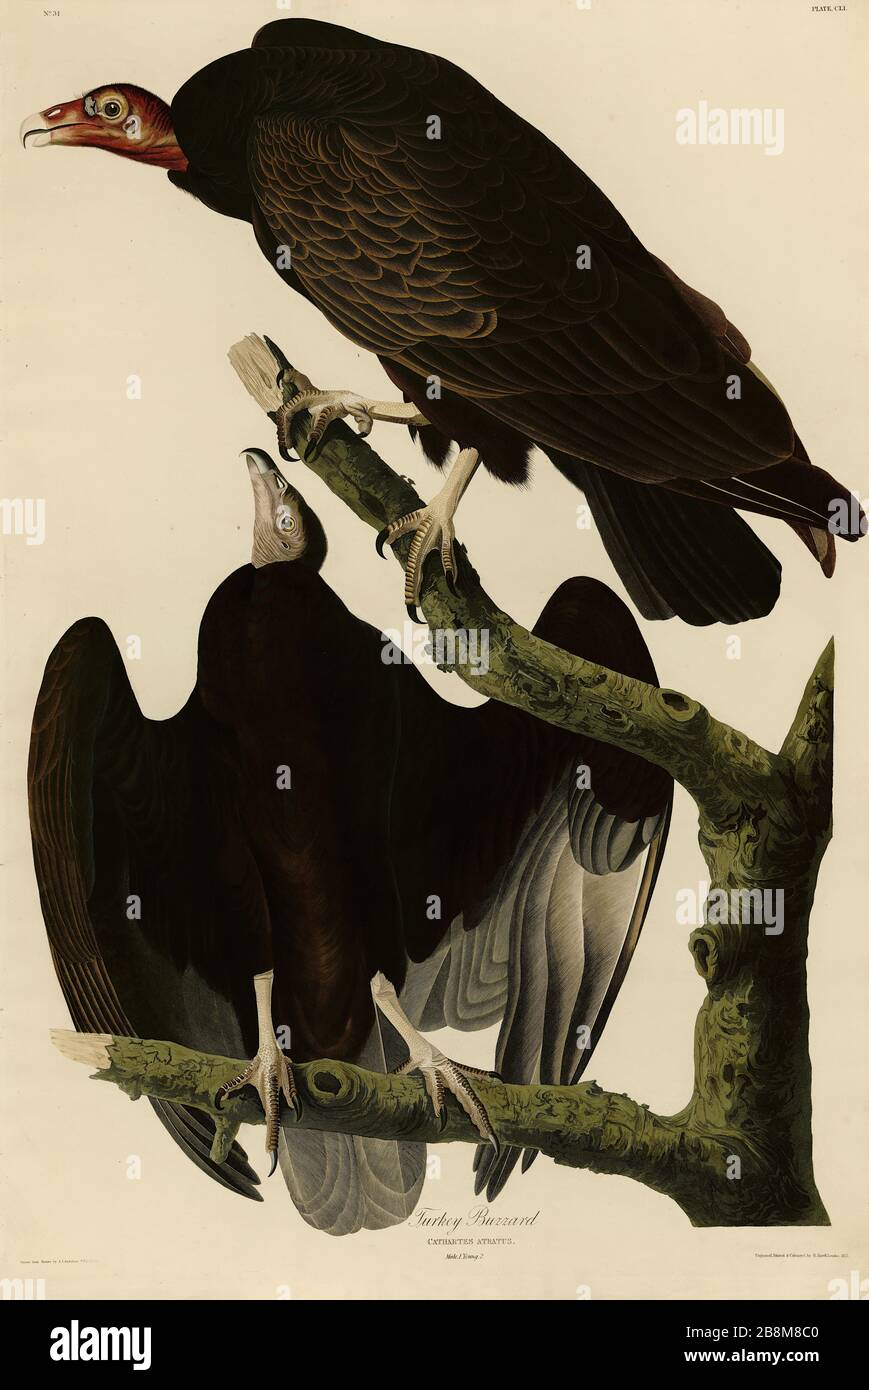 Plate 151 Turkey Buzzard (Vulture) from the Birds of America Folio (1827–1839) di John James Audubon - immagine modificata ad altissima risoluzione e qualità Foto Stock